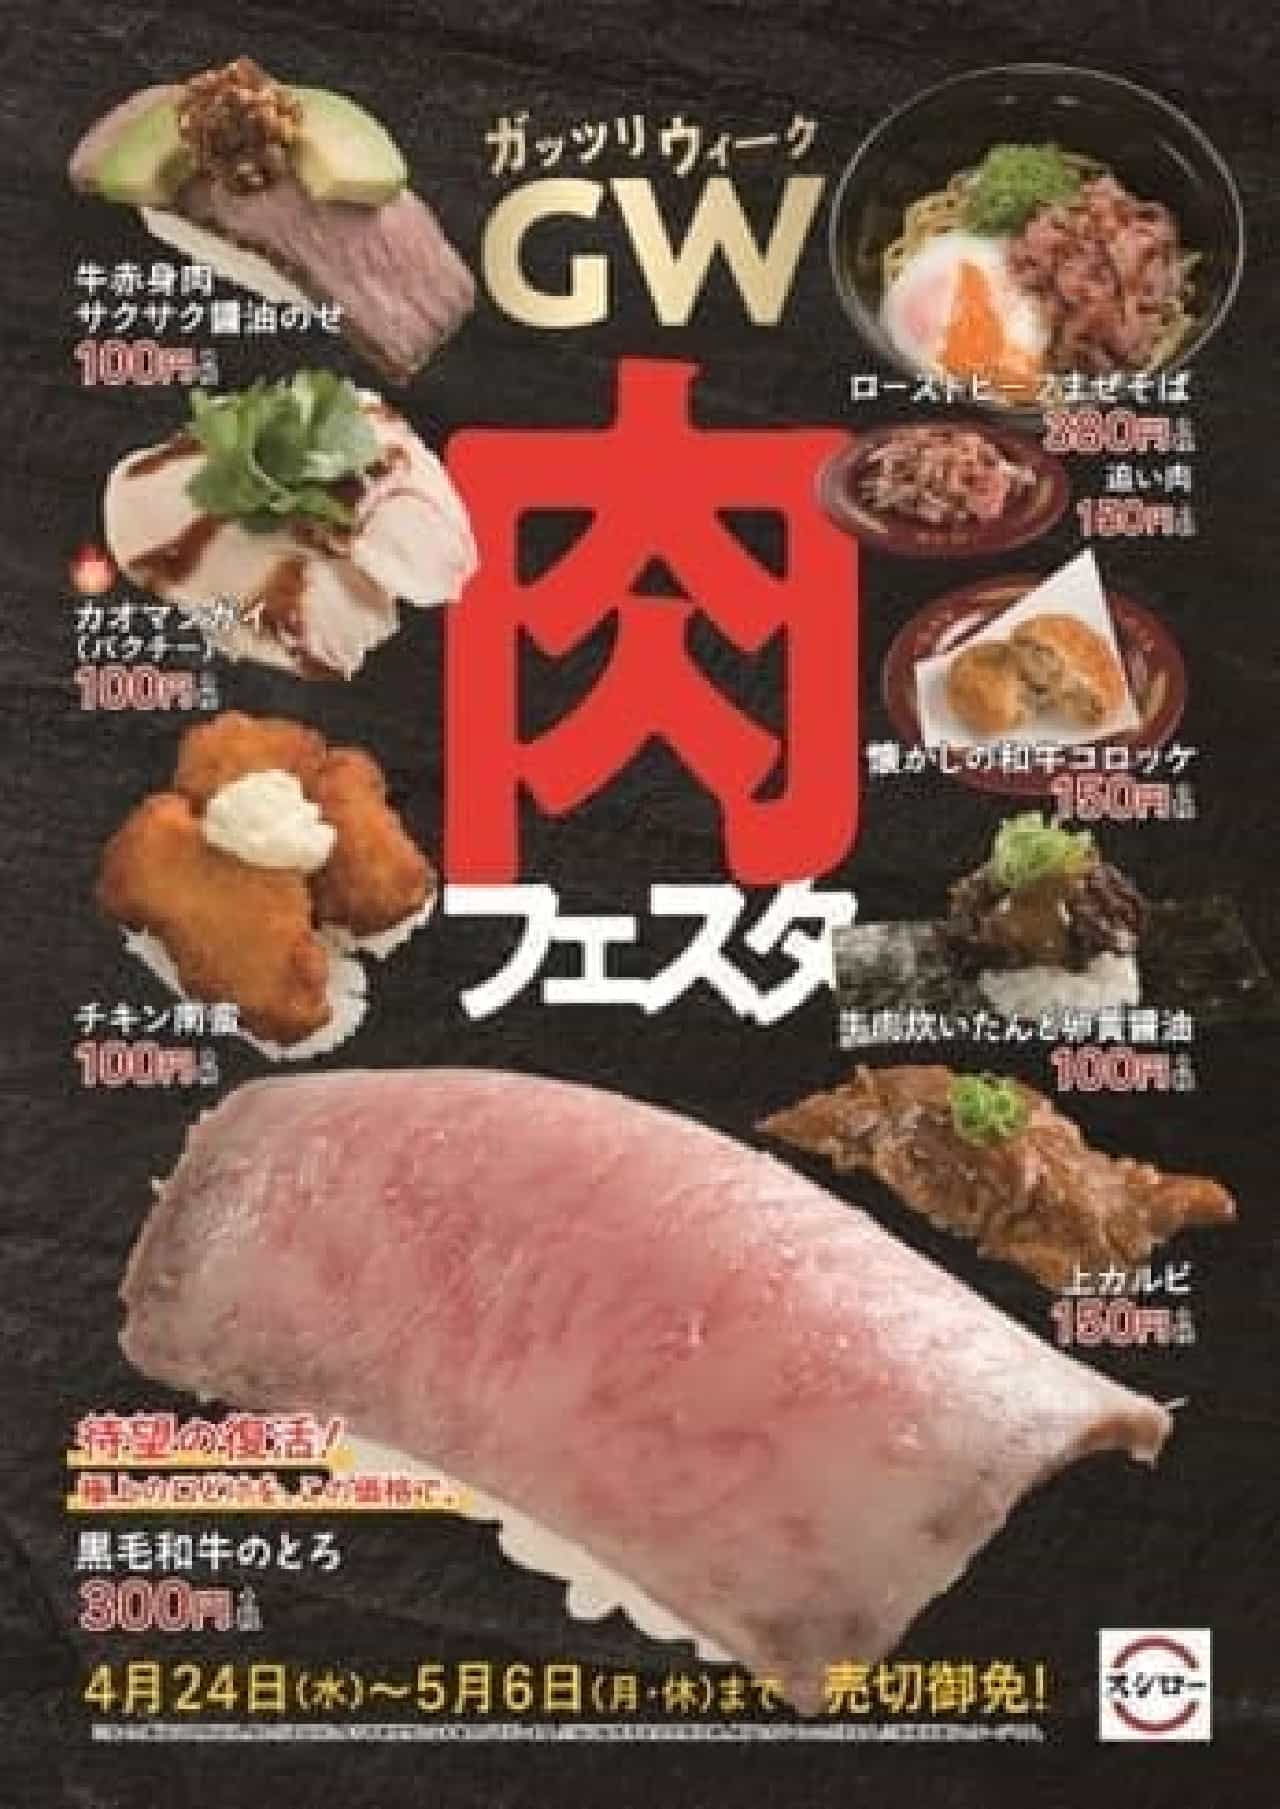 スシロー「GW（ガッツリウィーク）肉フェスタ」